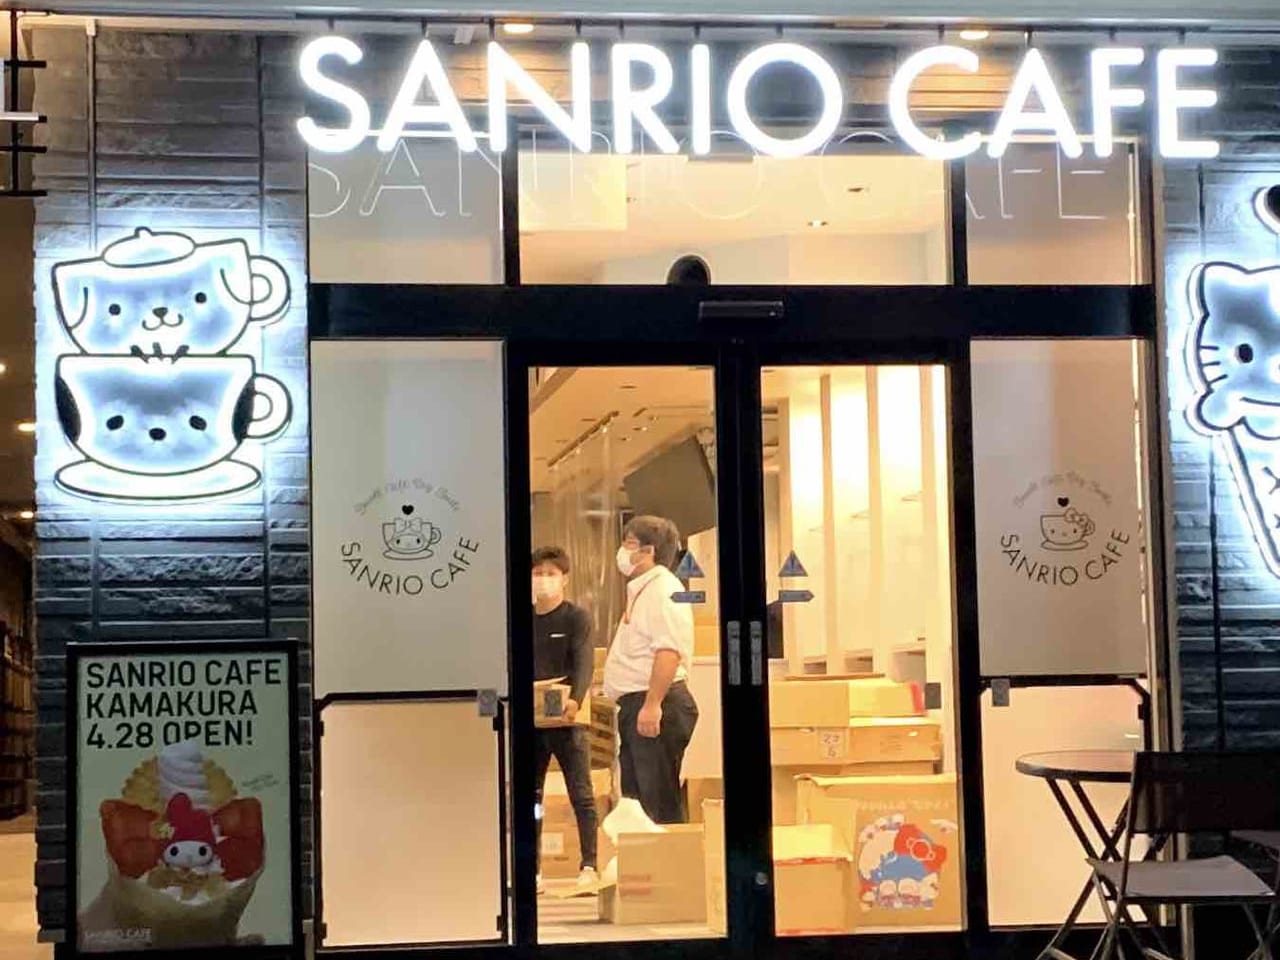 SANRIO CAFE